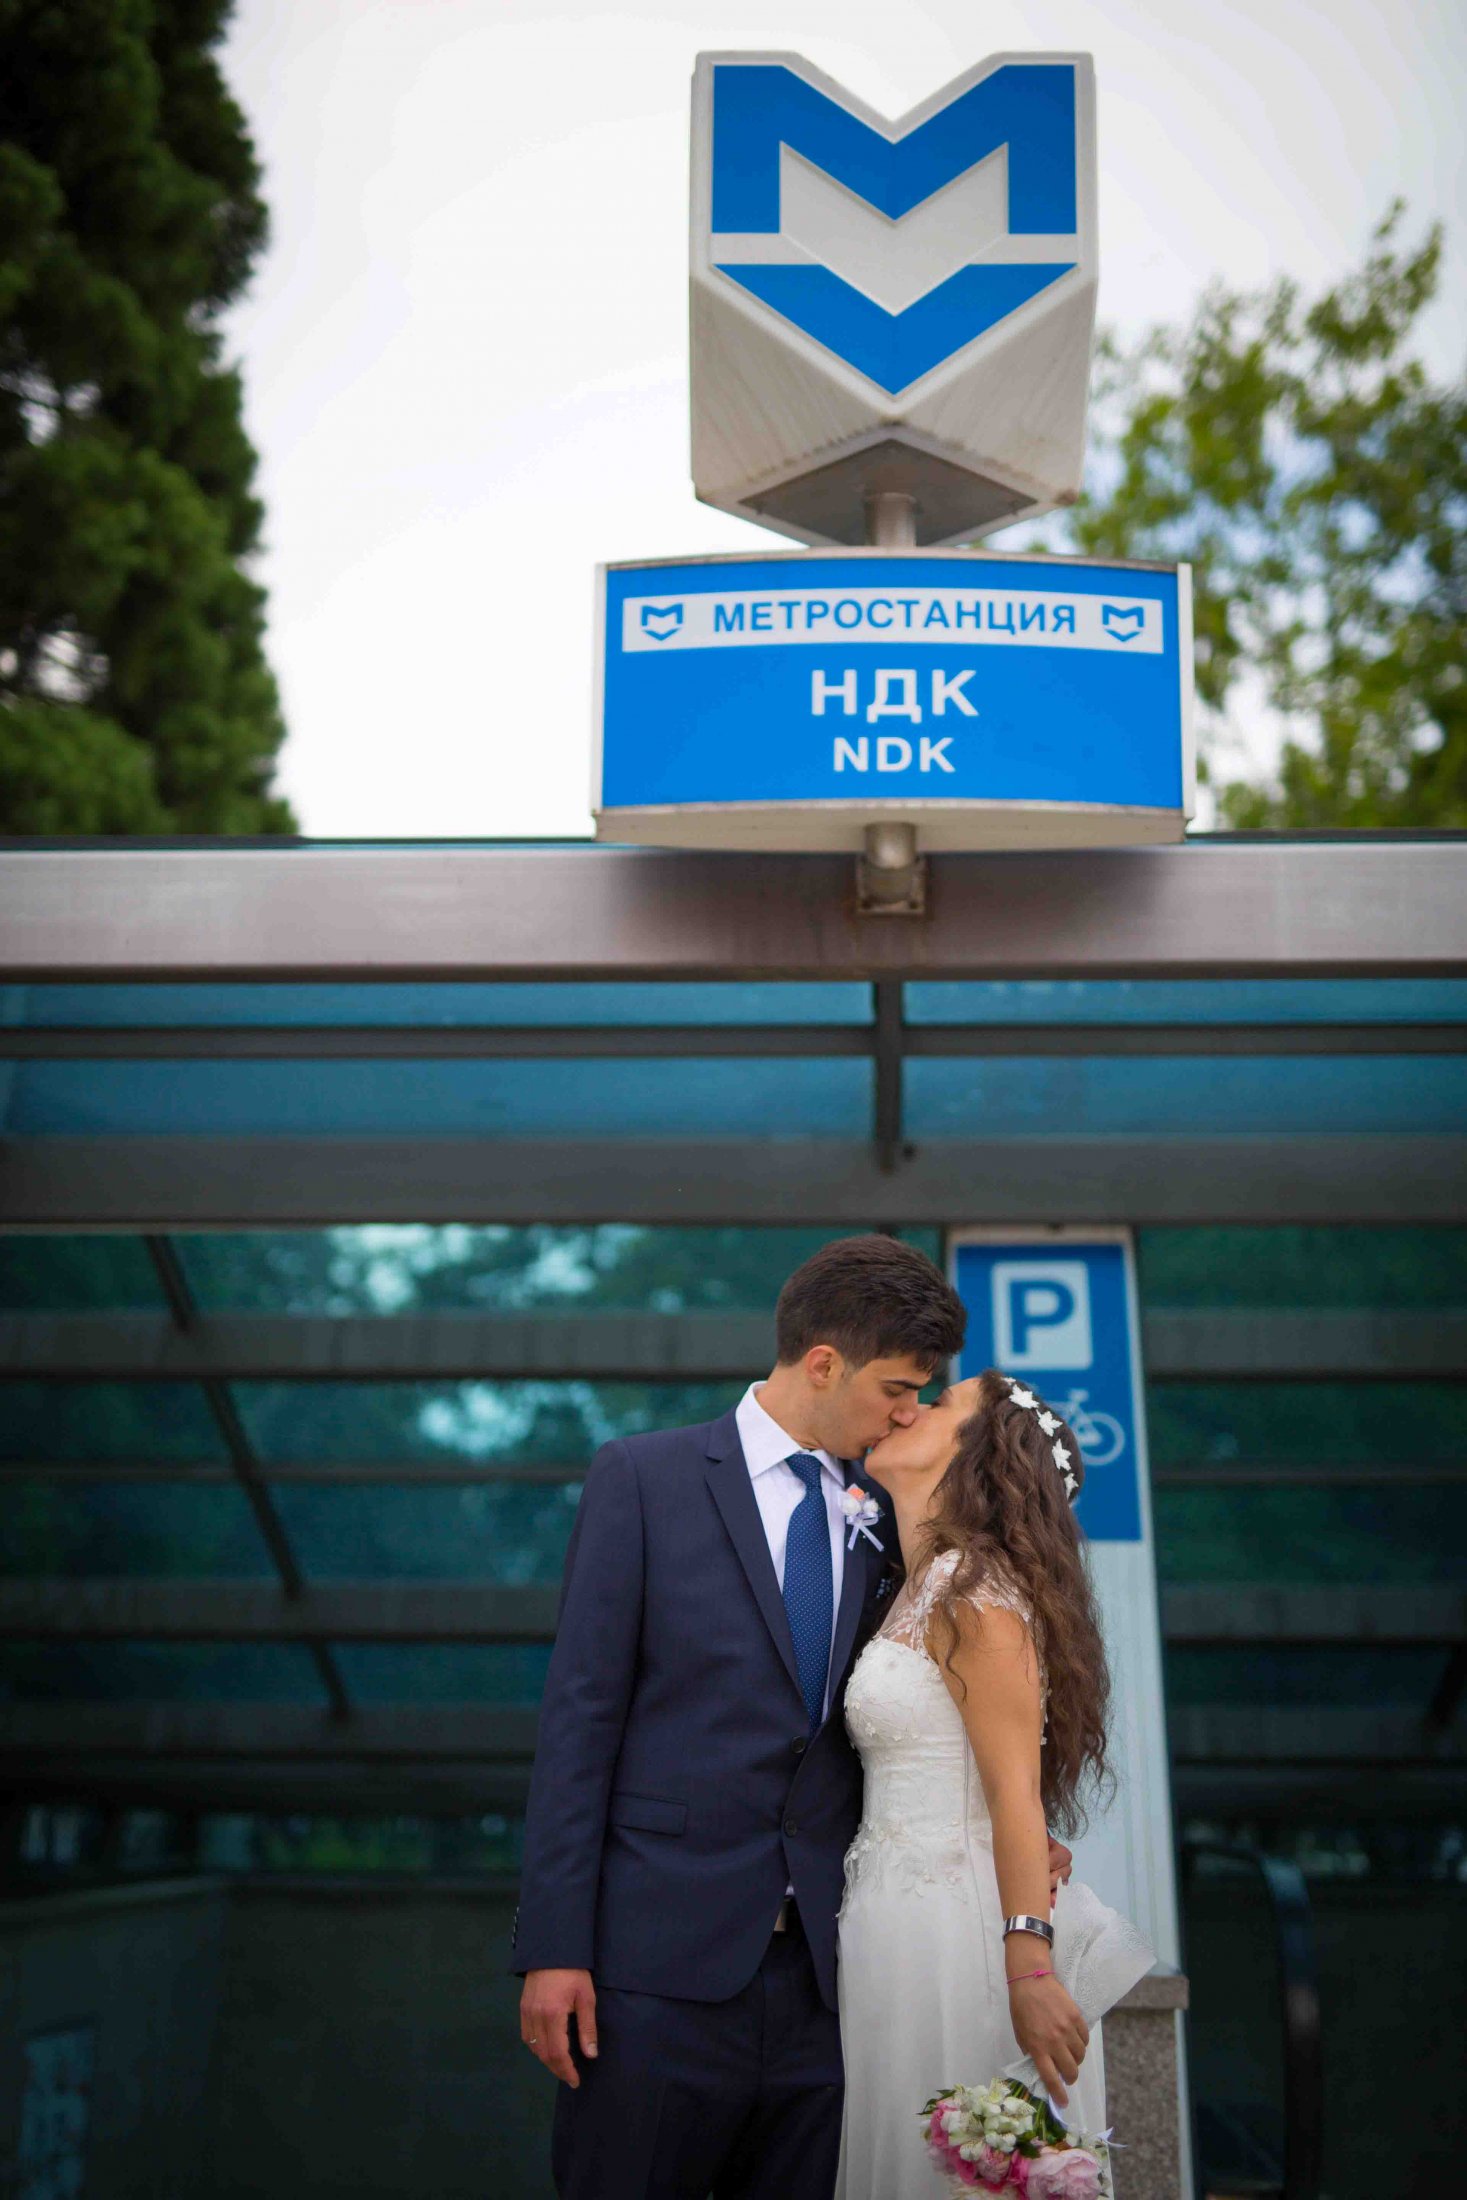 Сватбена фотография - Ники и Деси, София - сватбен фотограф Георги Матов студио Скайвю, Пловдив